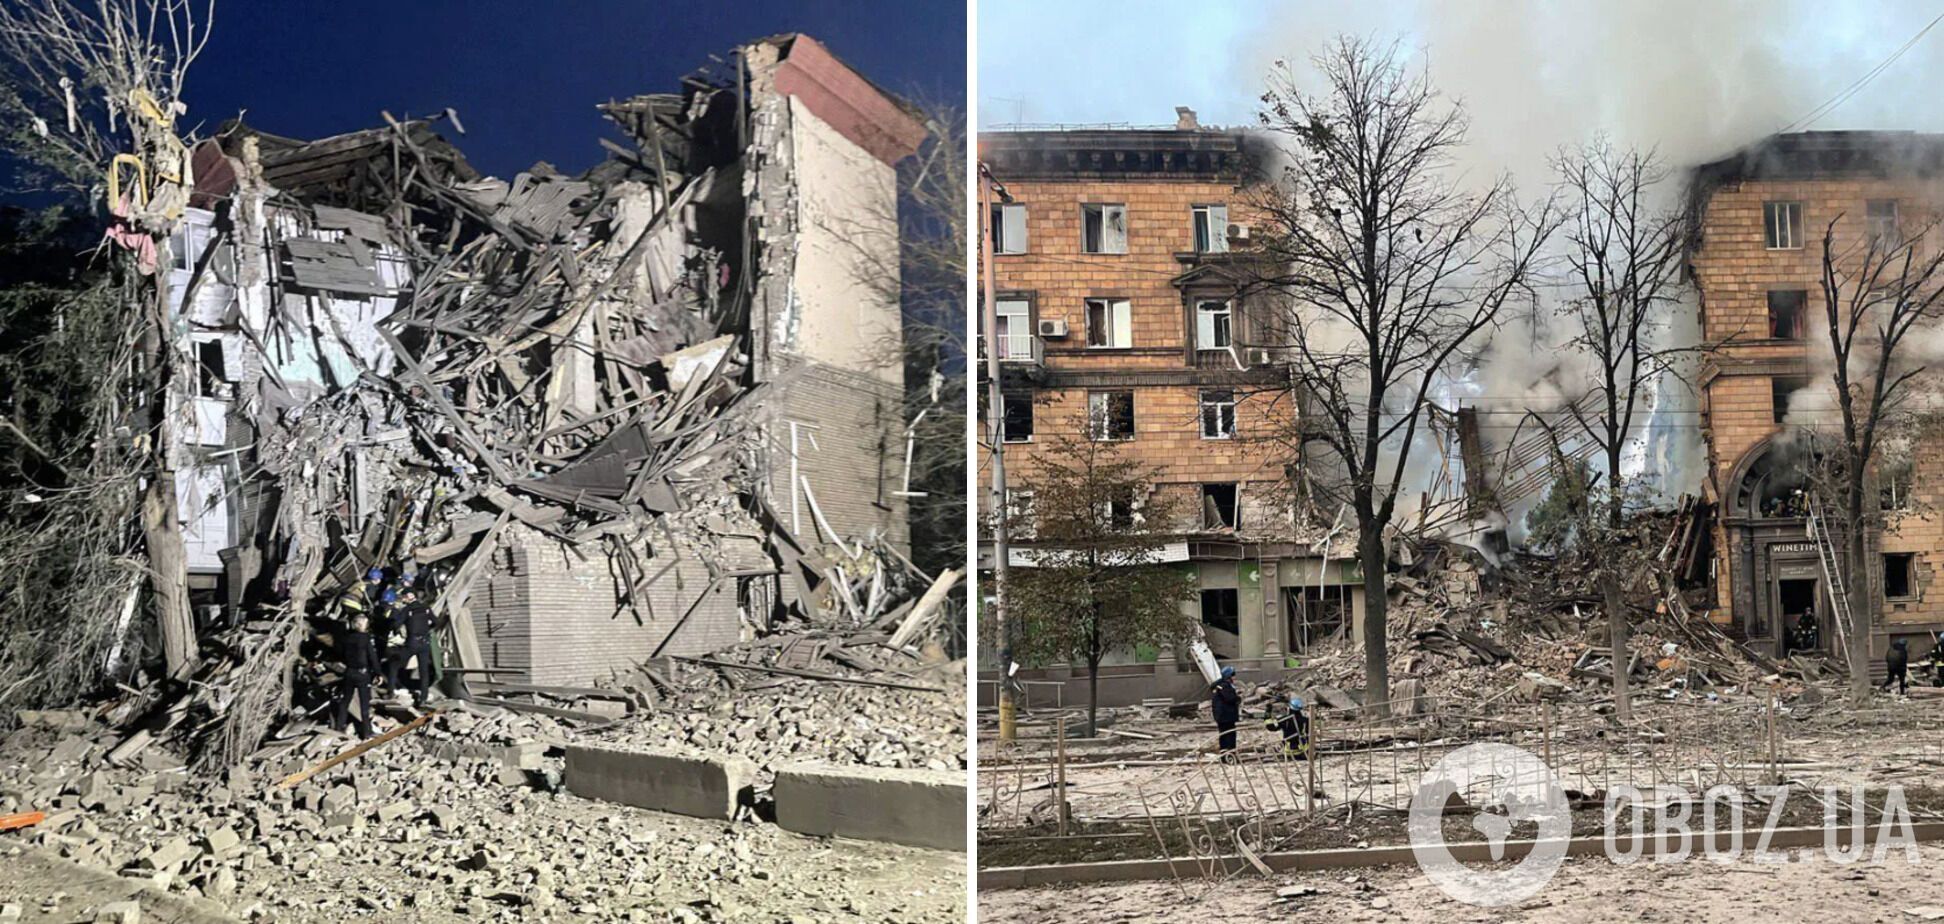 Число жертв ракетного удара РФ по домам в Запорожье возросло до 11: разбор завалов продолжается. Фото